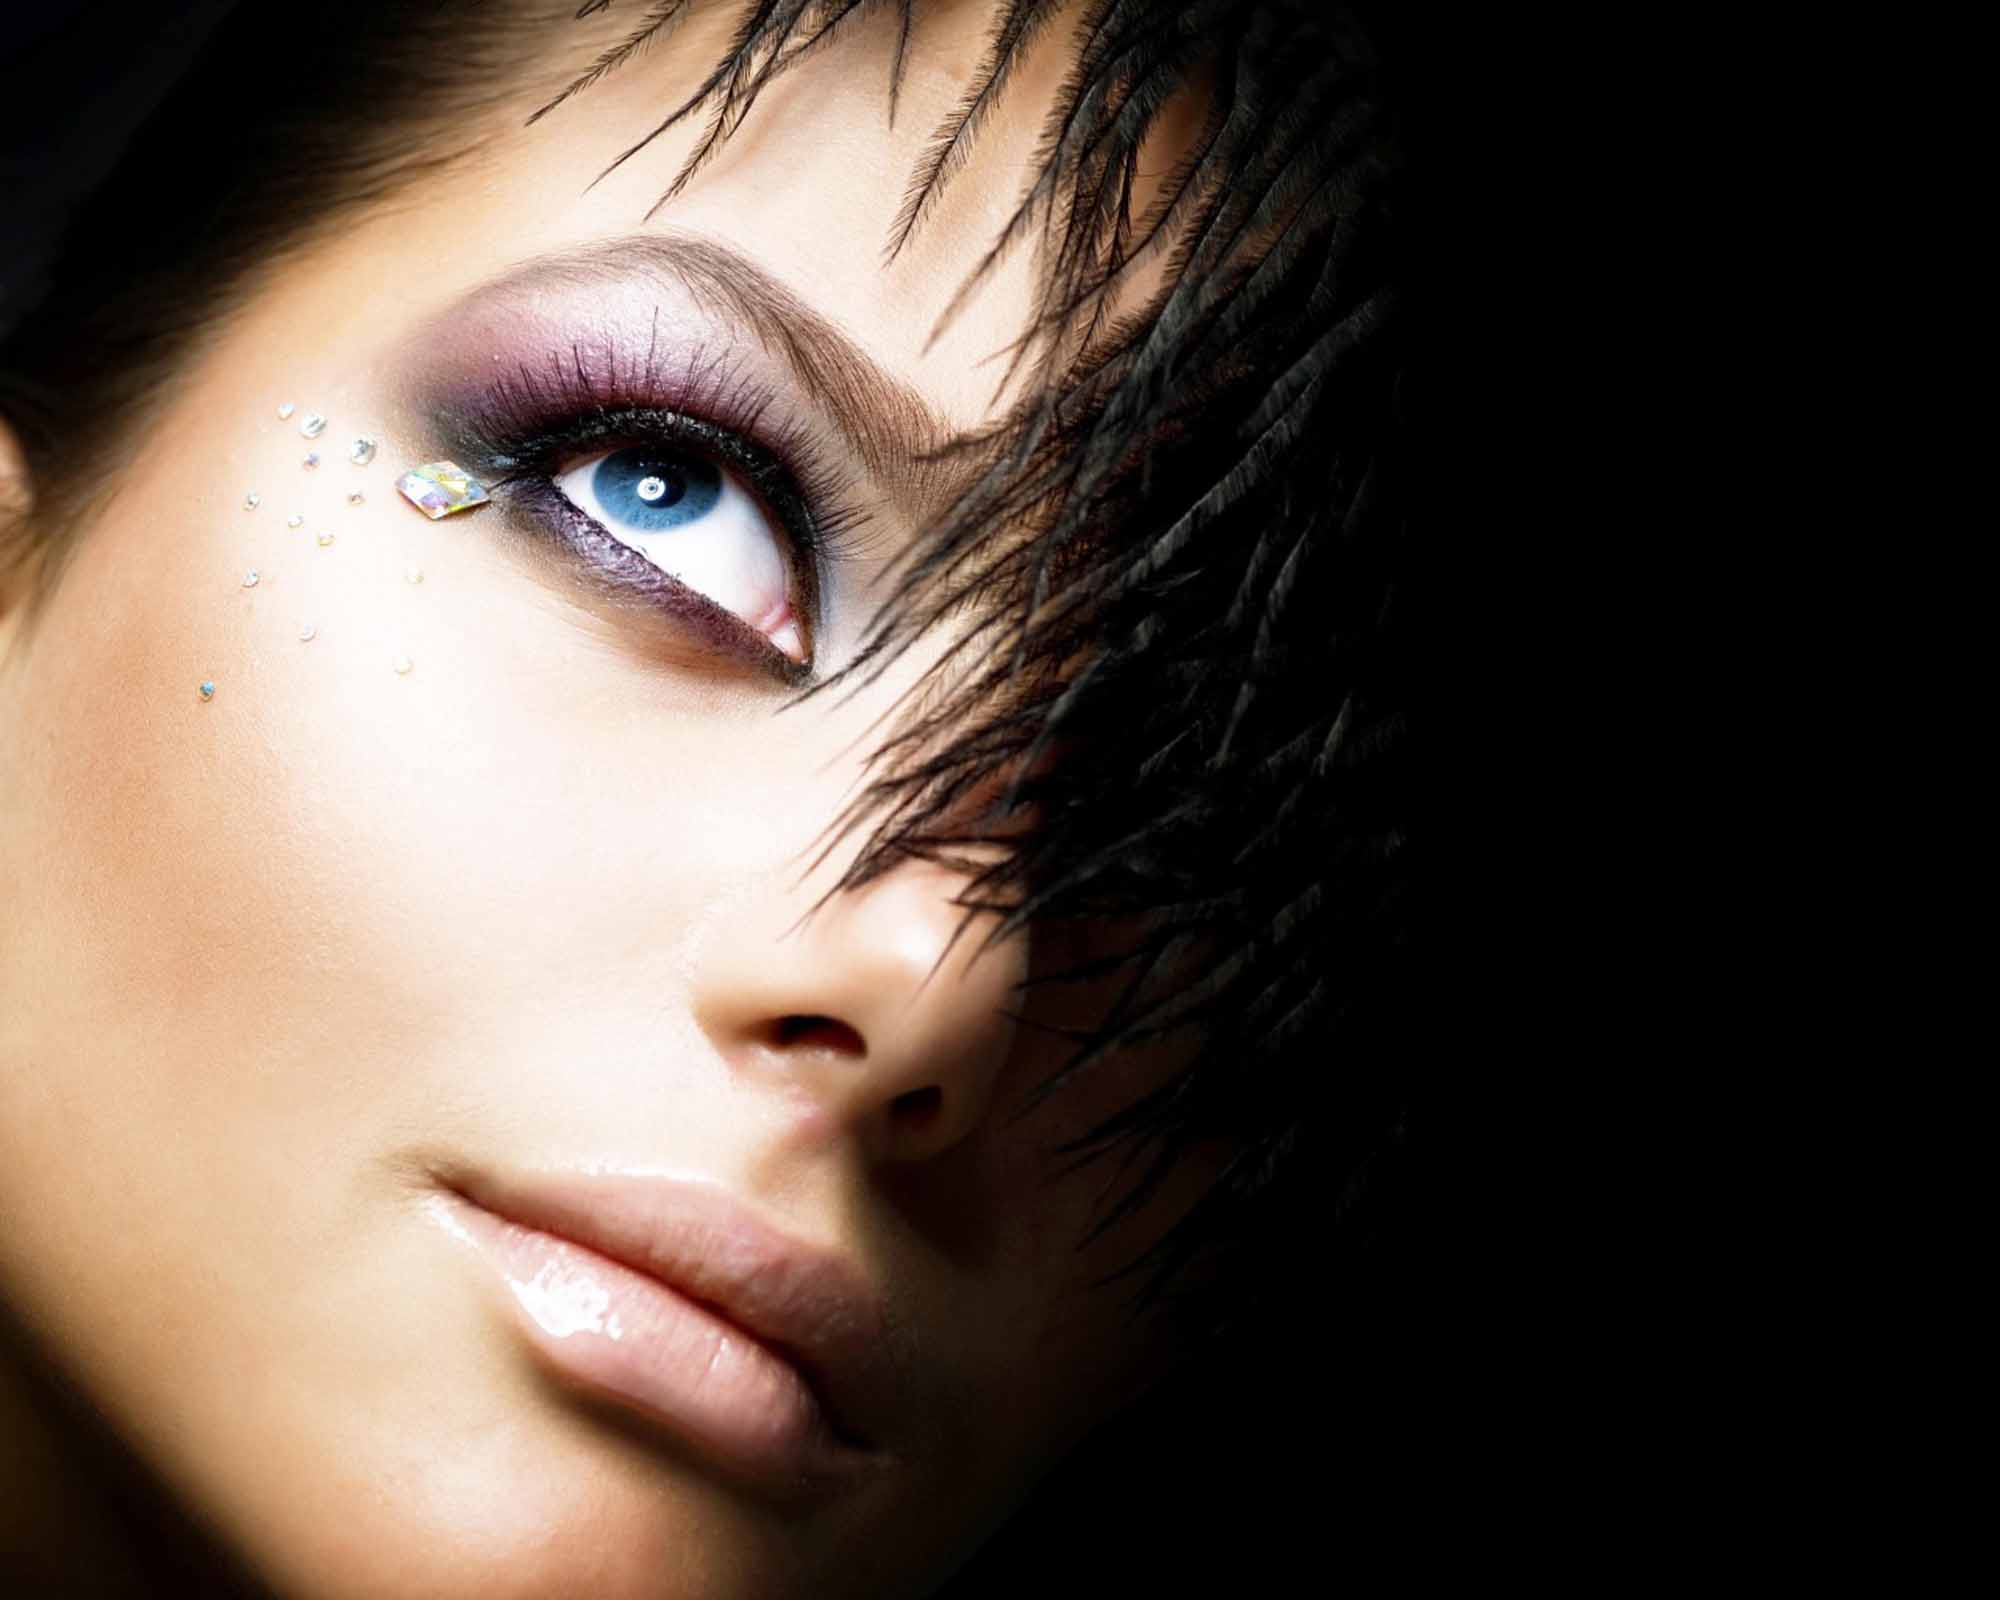 http://web-rockstars.com/bellezza/wp-content/uploads/2013/09/makeup002.jpg